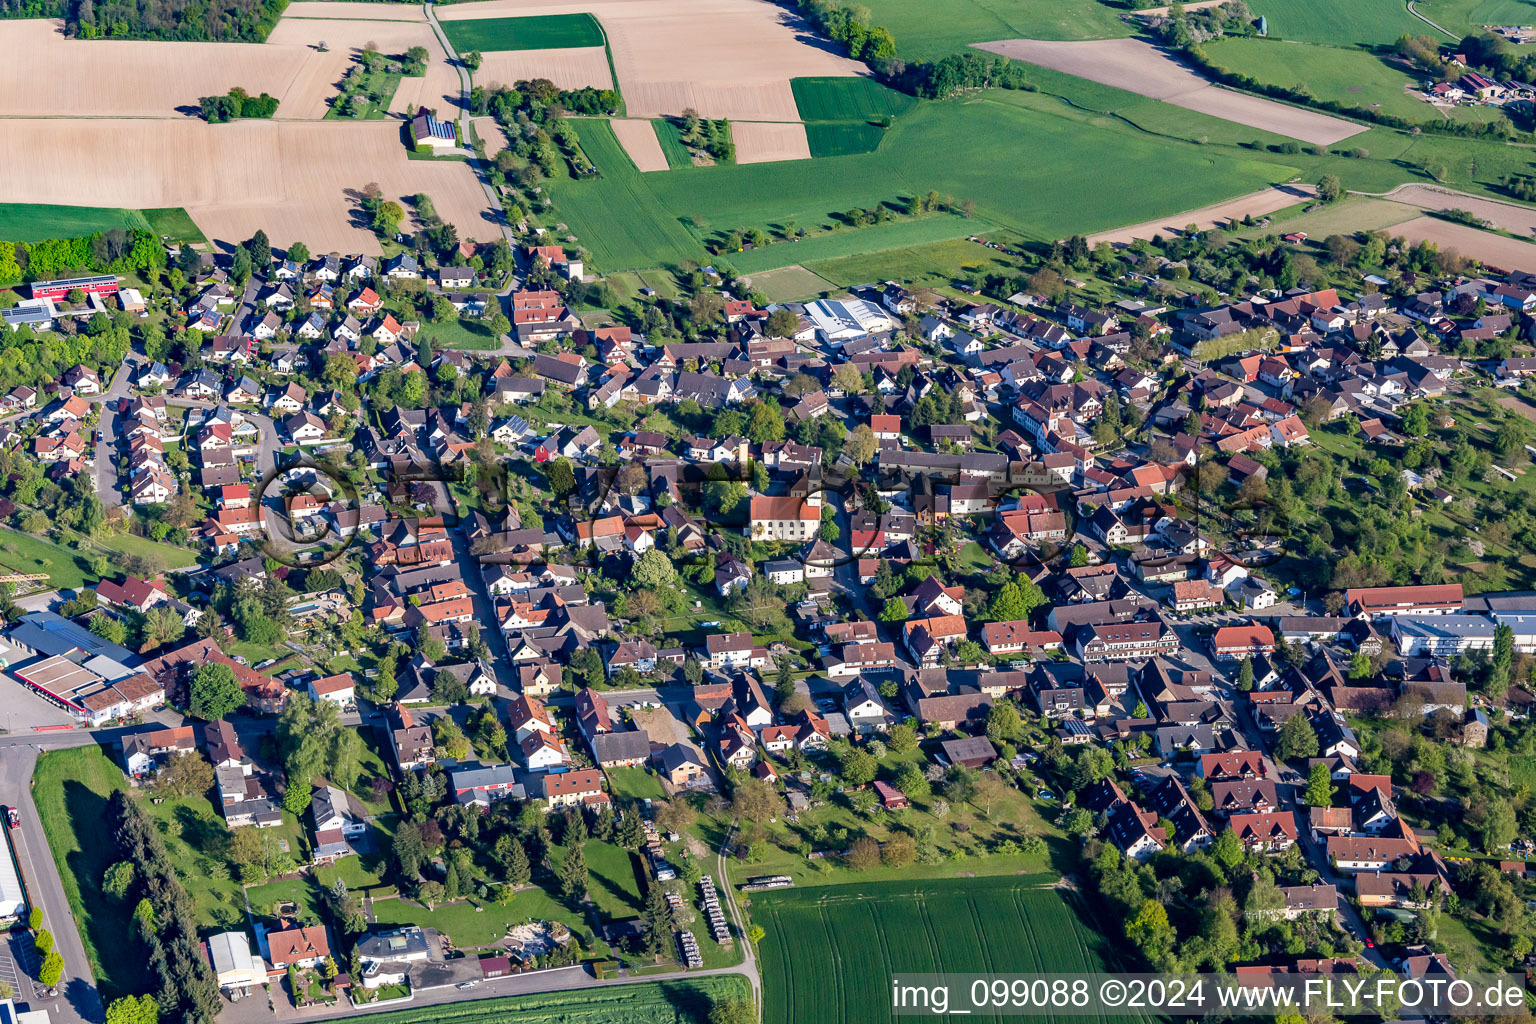 Village view in Scherzheim in the state Baden-Wurttemberg, Germany